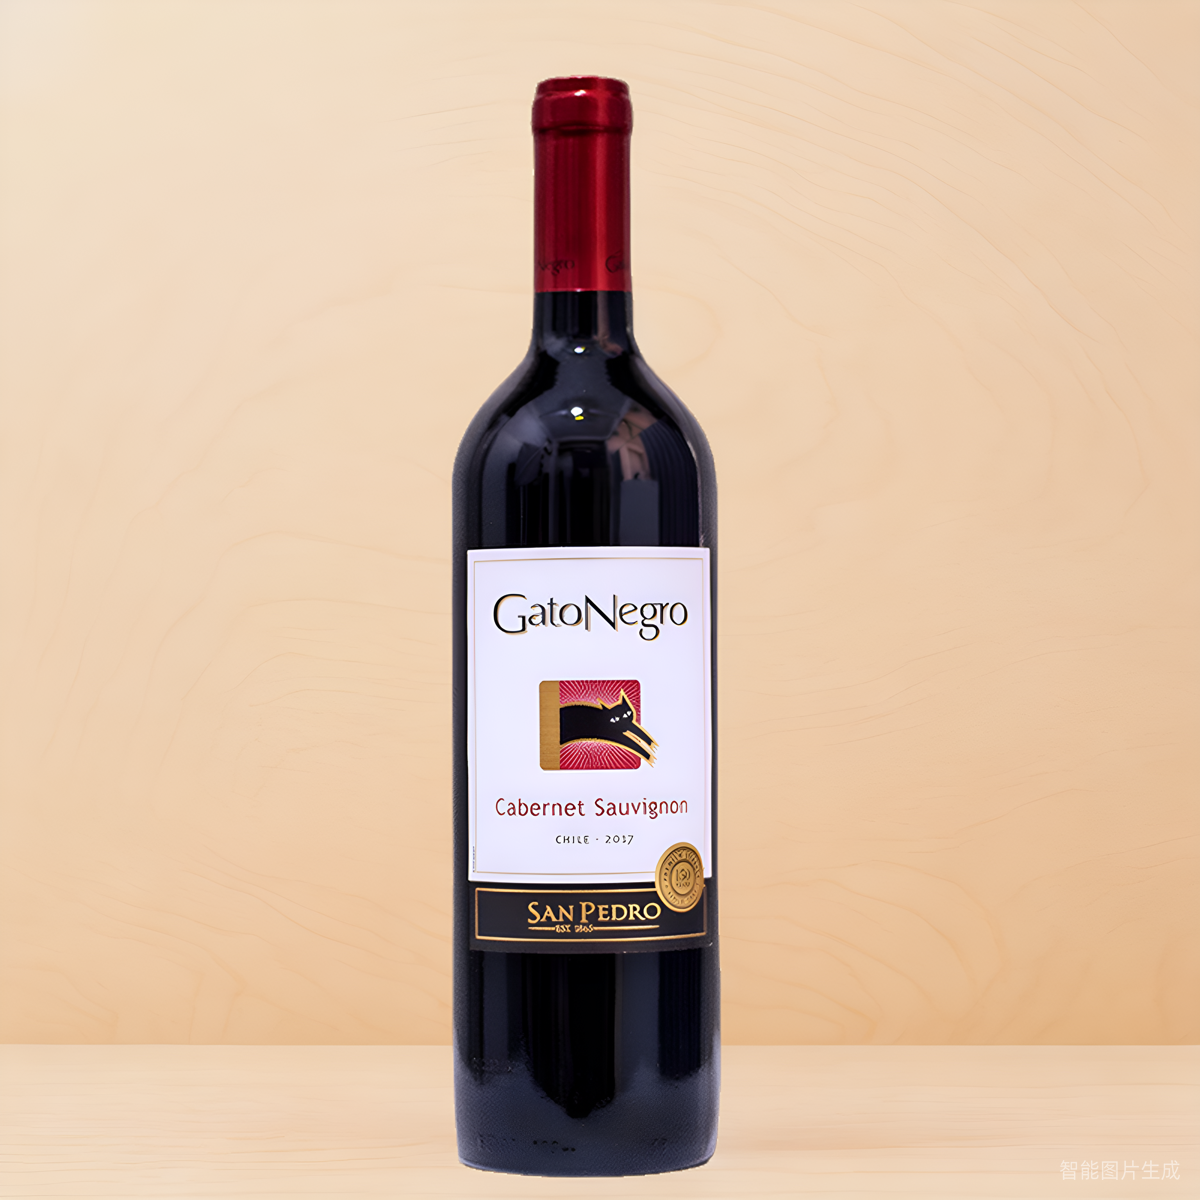 gatonegro黑猫赤霞珠干红葡萄酒2017年份智利原瓶进口红酒750mL 酒类 干红静态葡萄酒 原图主图